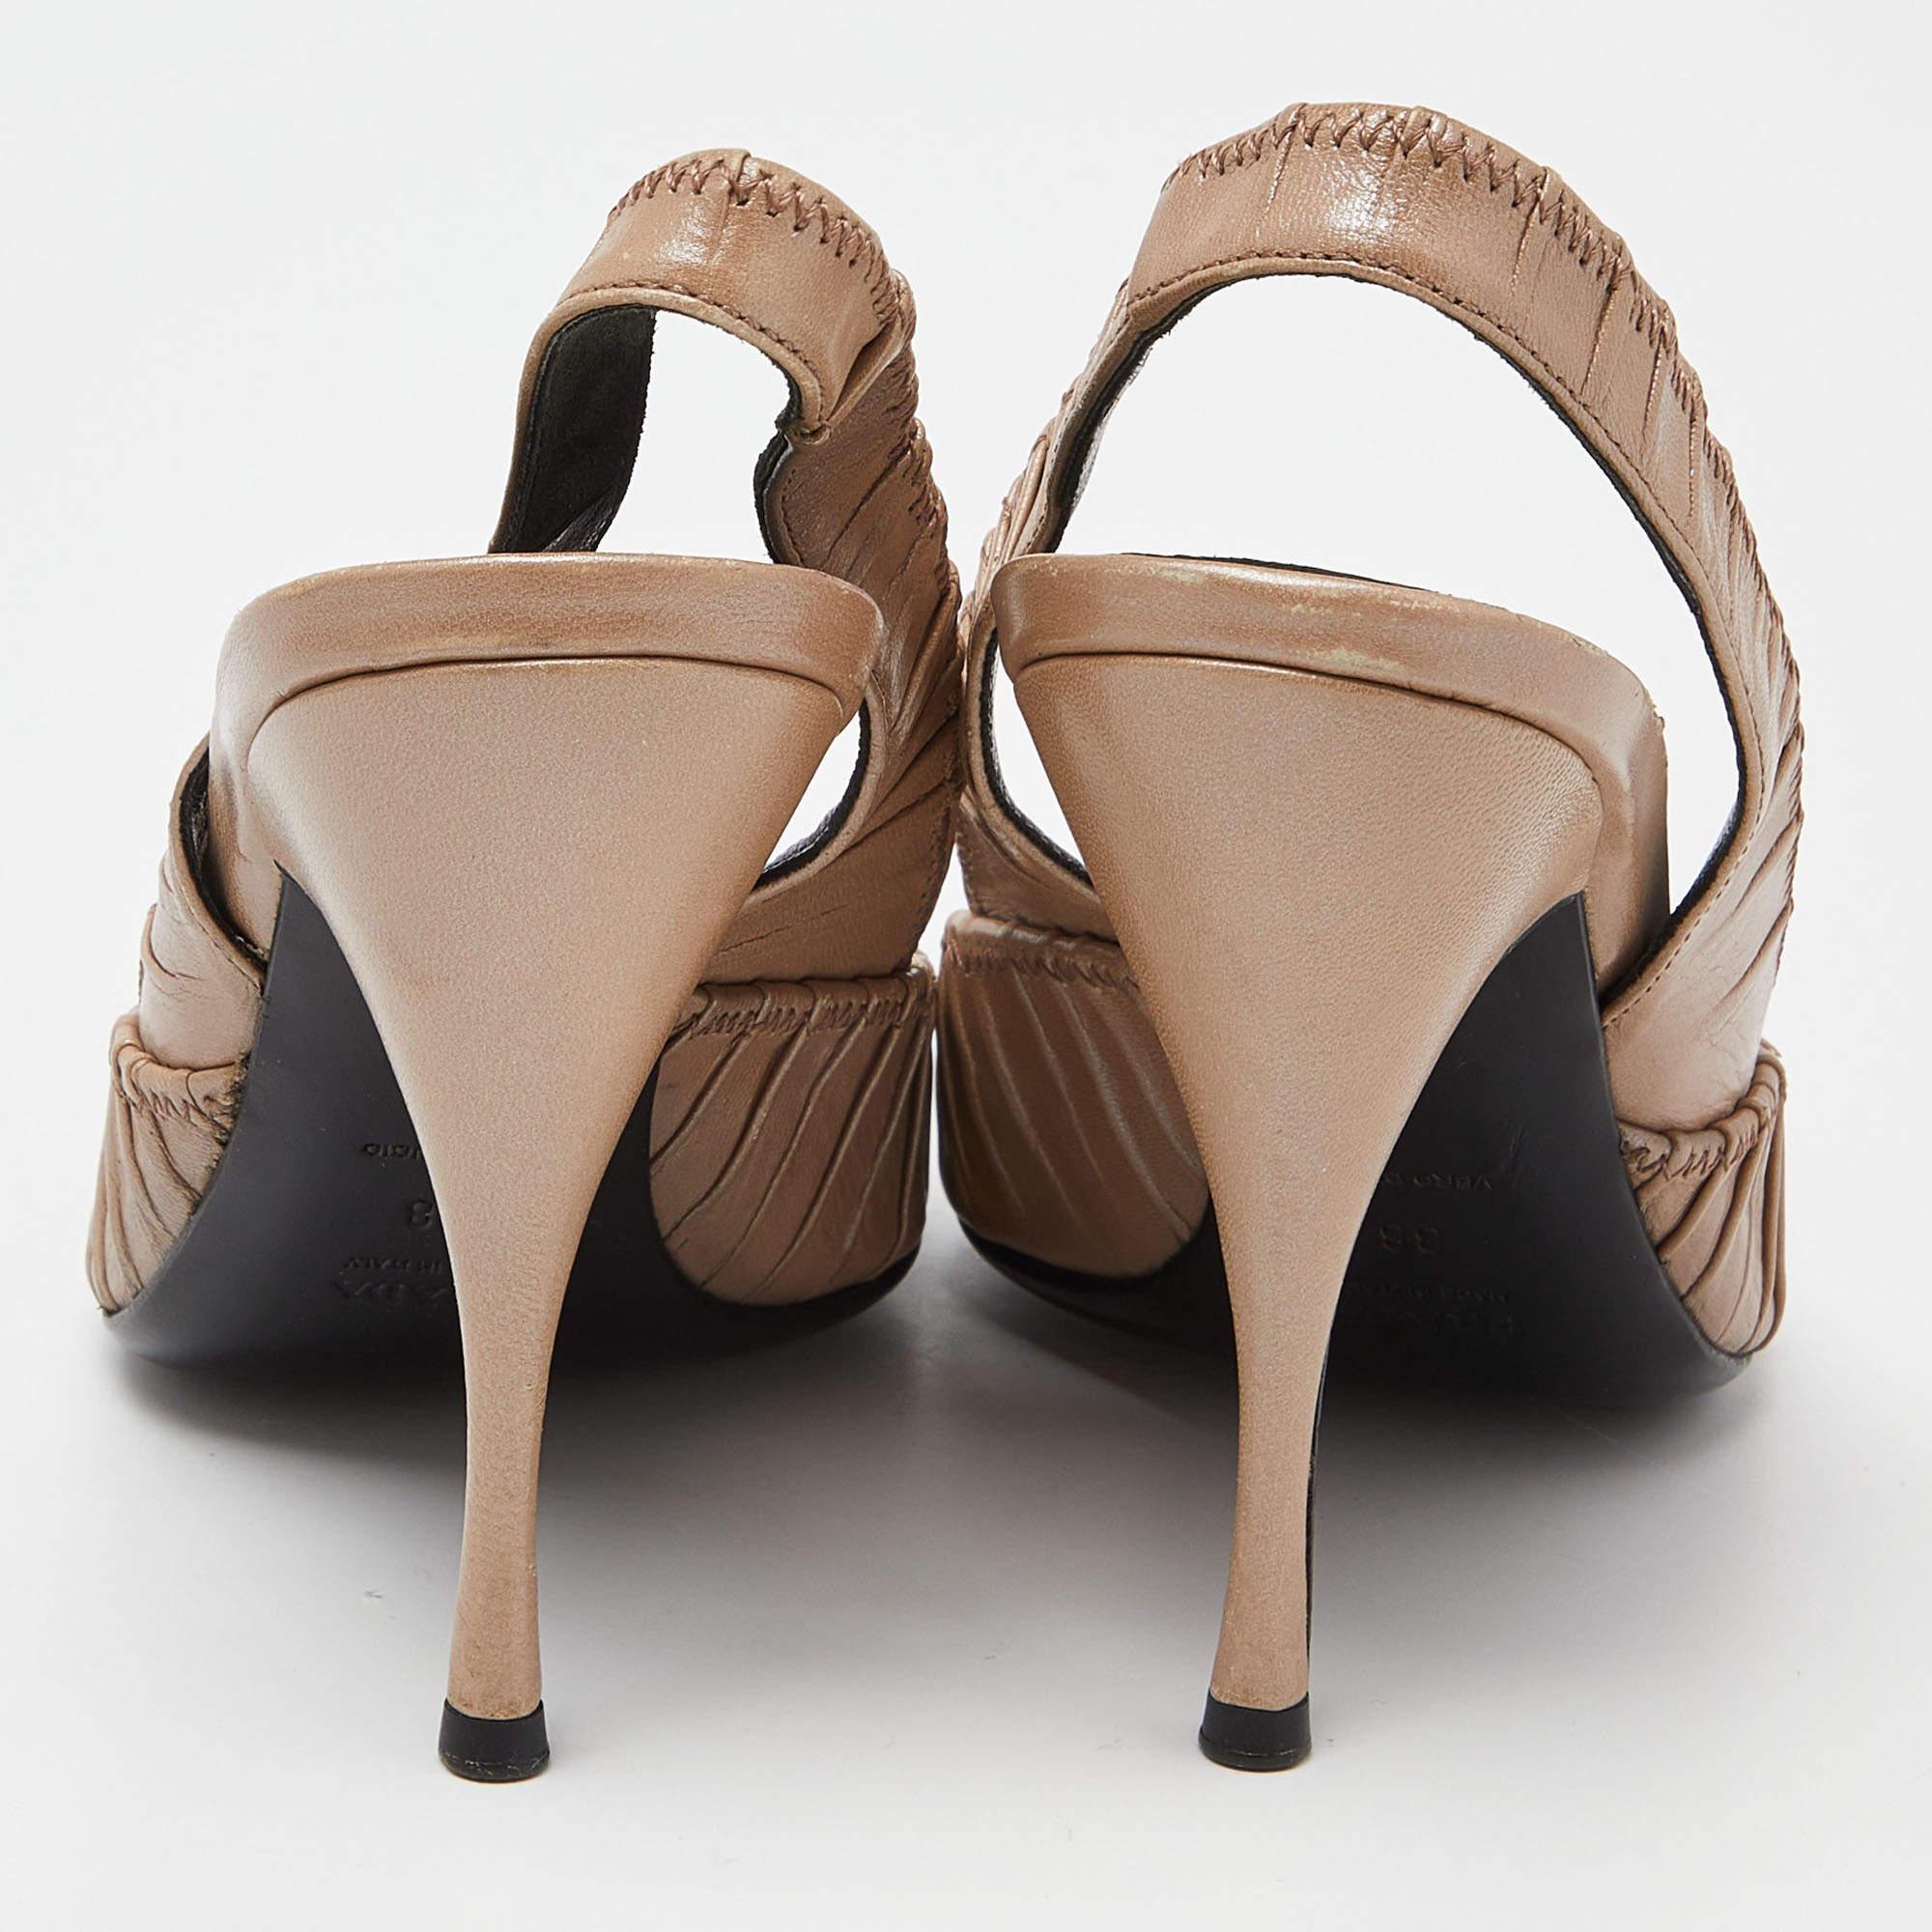 Un flair féminin et un attrait sophistiqué caractérisent ces étonnantes sandales à bride de Prada. Fabriquées en cuir plissé dans une teinte beige, elles ajouteront un charme opulent à votre look et s'accorderont avec de nombreux looks que vous